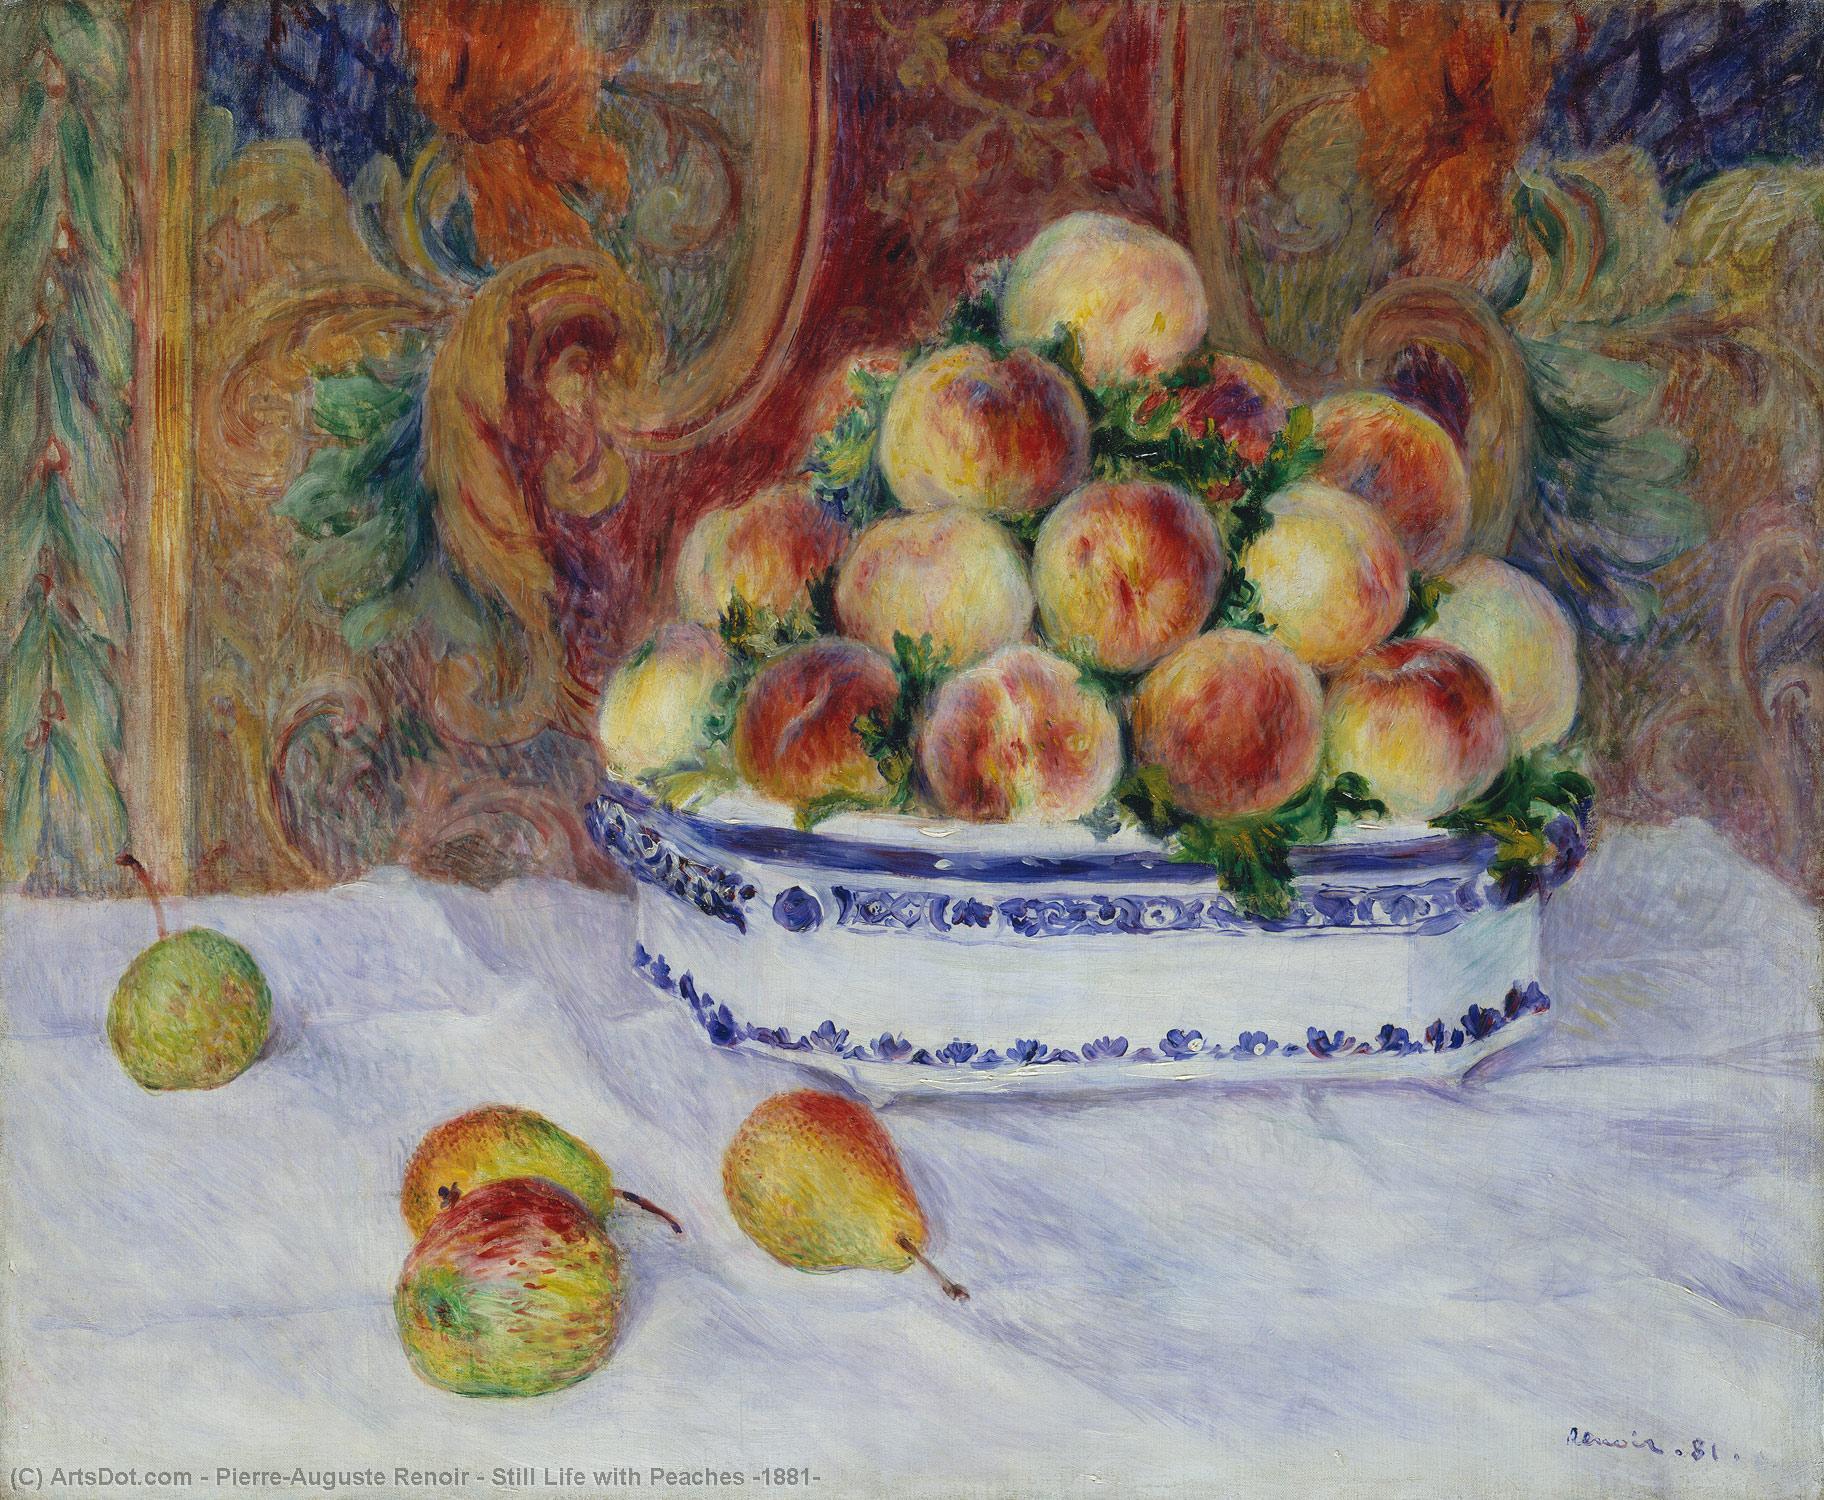 WikiOO.org - אנציקלופדיה לאמנויות יפות - ציור, יצירות אמנות Pierre-Auguste Renoir - Still Life with Peaches (1881)